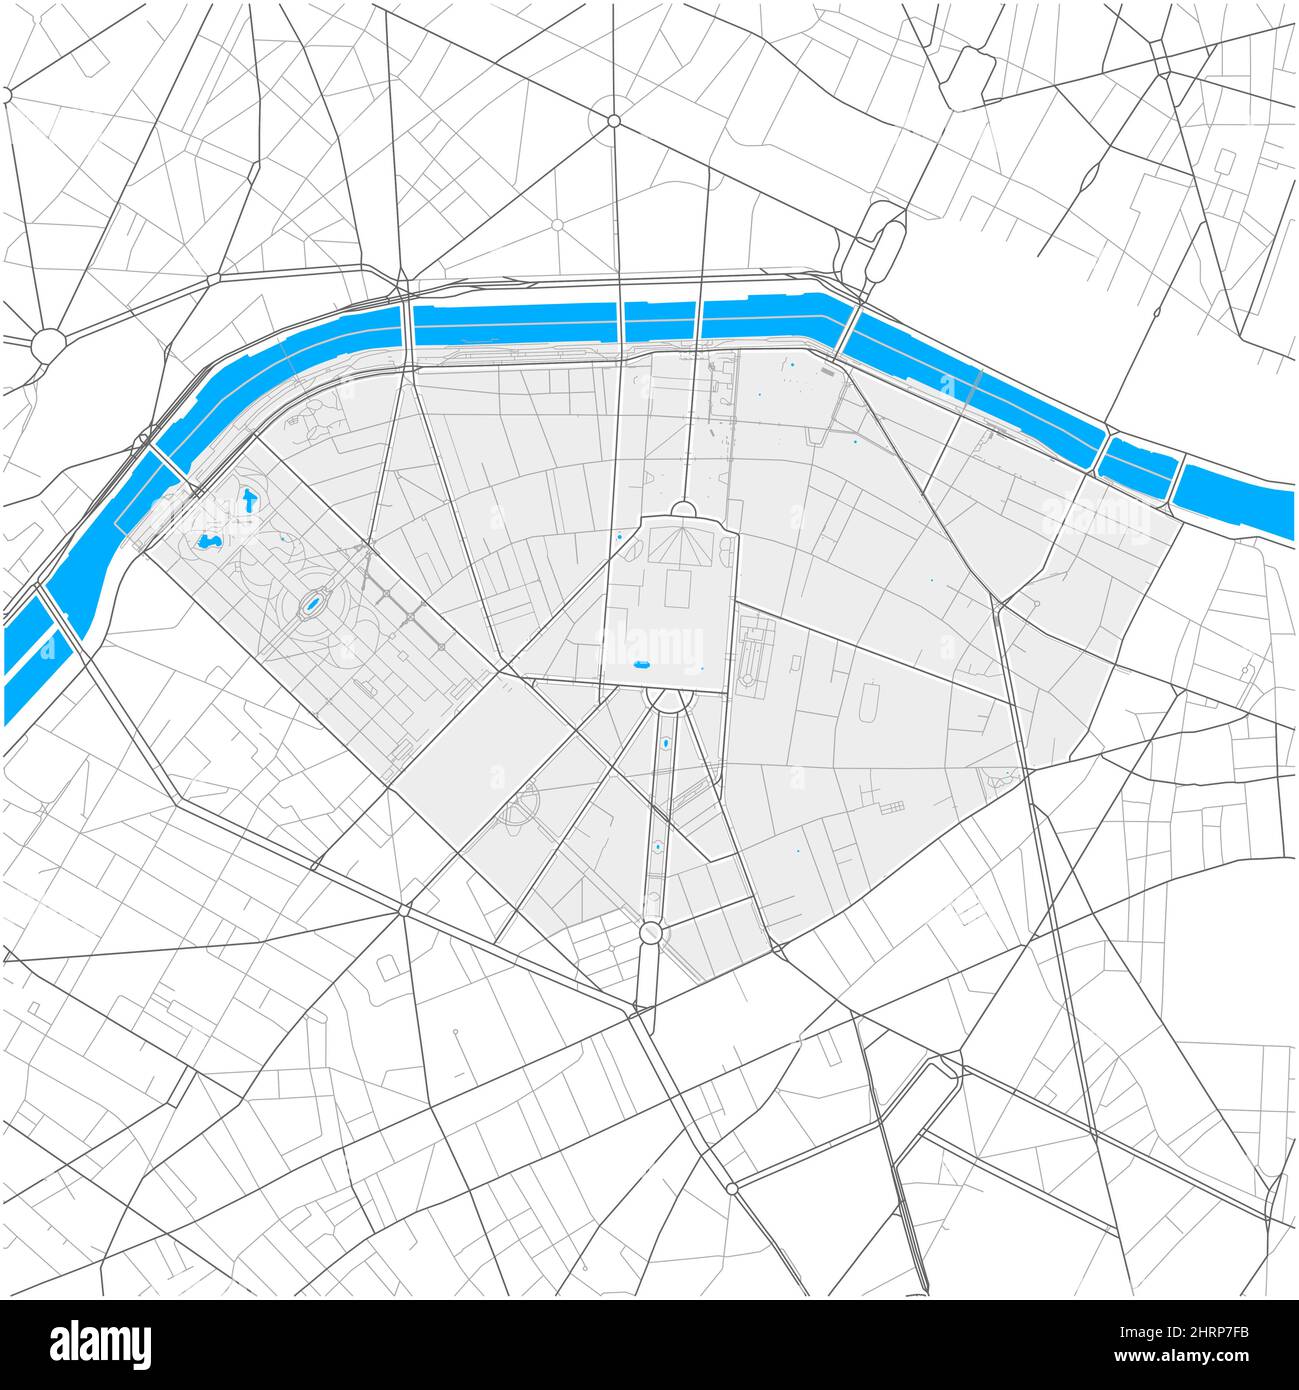 7. Arrondissement, Paris, FRANKREICH, detailreiche Vektorkarte mit Stadtgrenzen und bearbeitbaren Pfaden. Weiße Umrisse für Hauptstraßen. Viele kleinere Wege. Stock Vektor